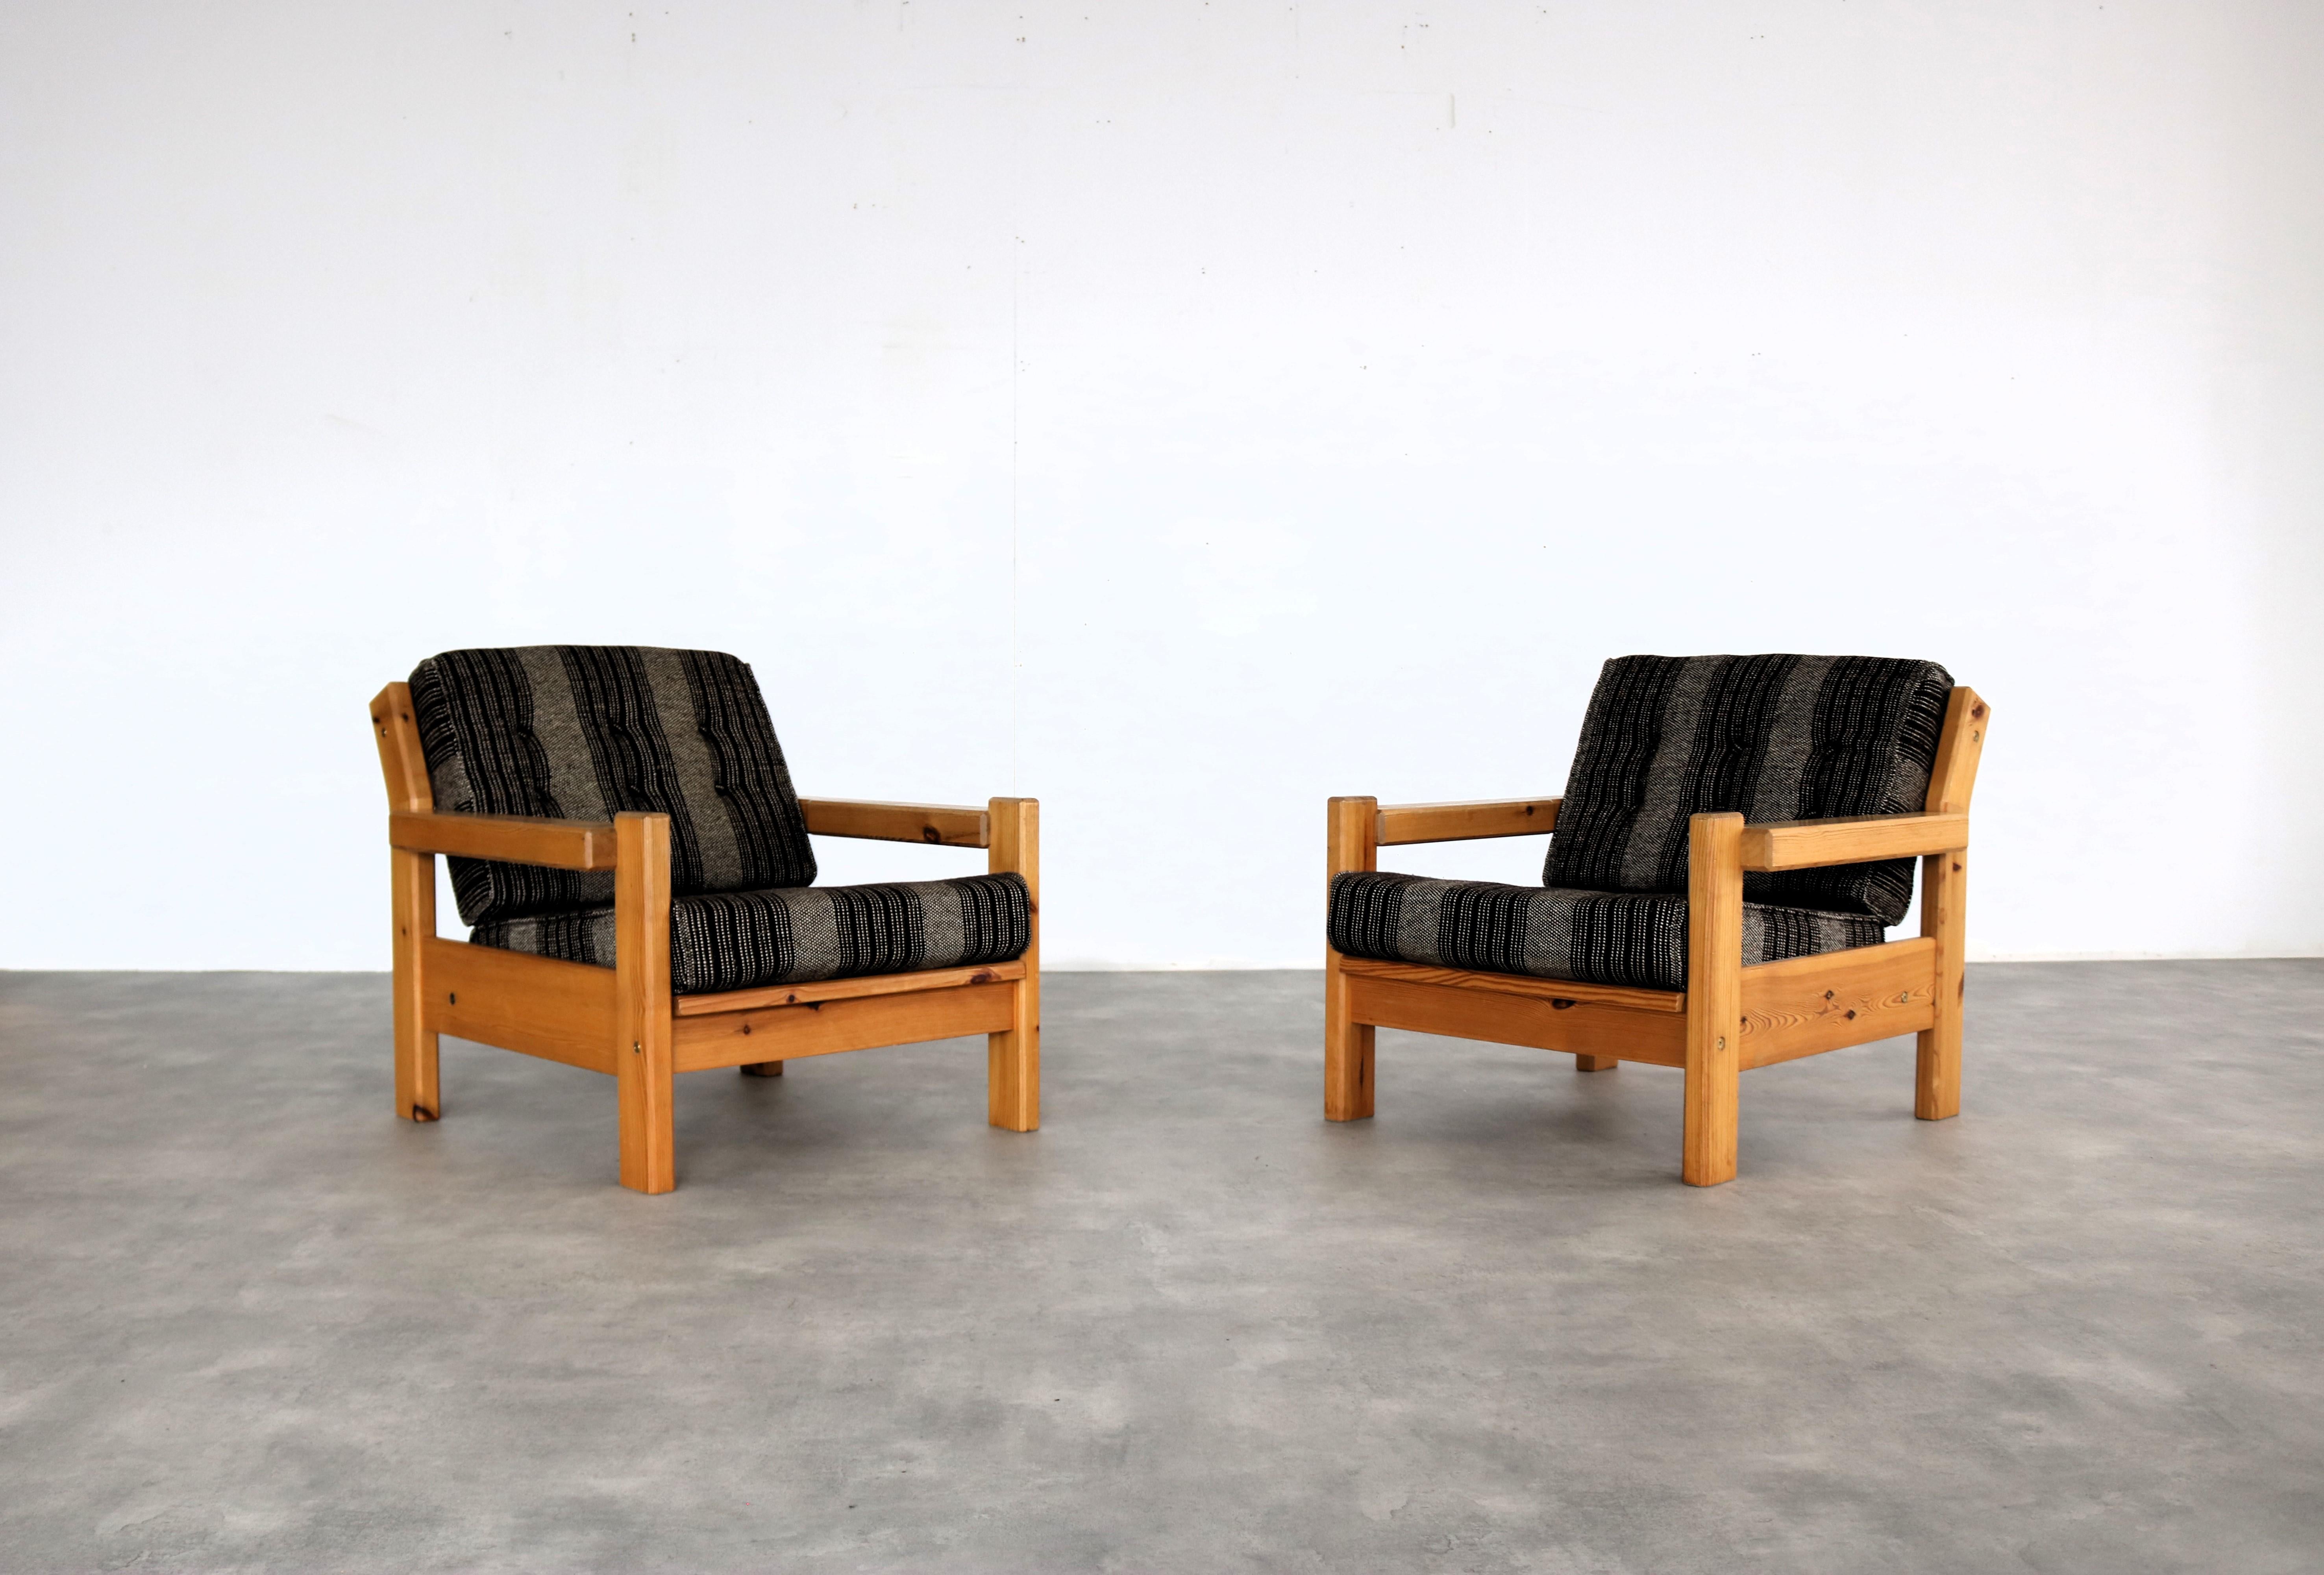 groupe de sièges vintage  fauteuils  table basse  70's  Suède

période  60's
Design/One  inconnu  Suède
condition  bon  légers signes d'utilisation
taille  72 x 77 x 85 (hxwxd) hauteur du siège 38 cm ;
taille  48x72x72

détails  ensemble de 2